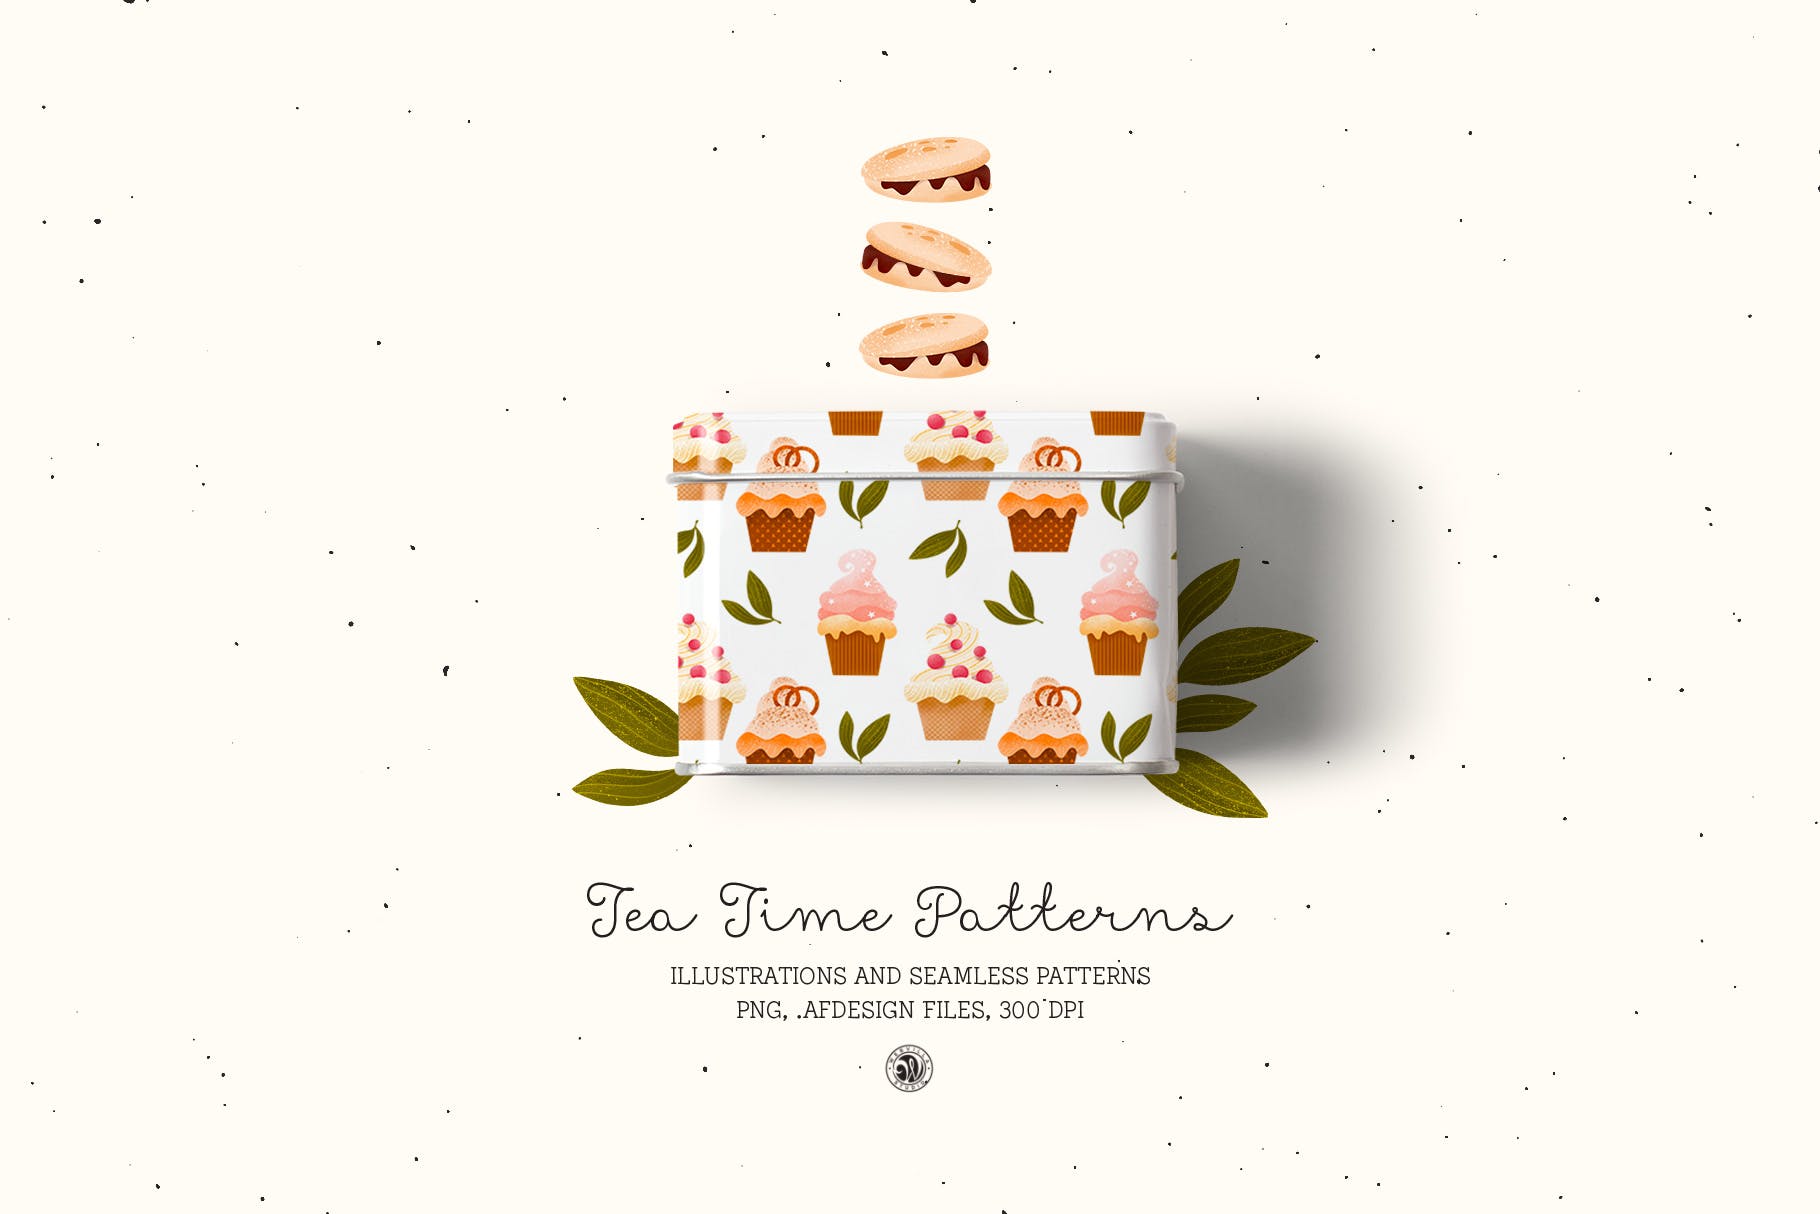 下午茶时光主题点心甜点手绘图案无缝背景素材 Tea Time Patterns插图(6)